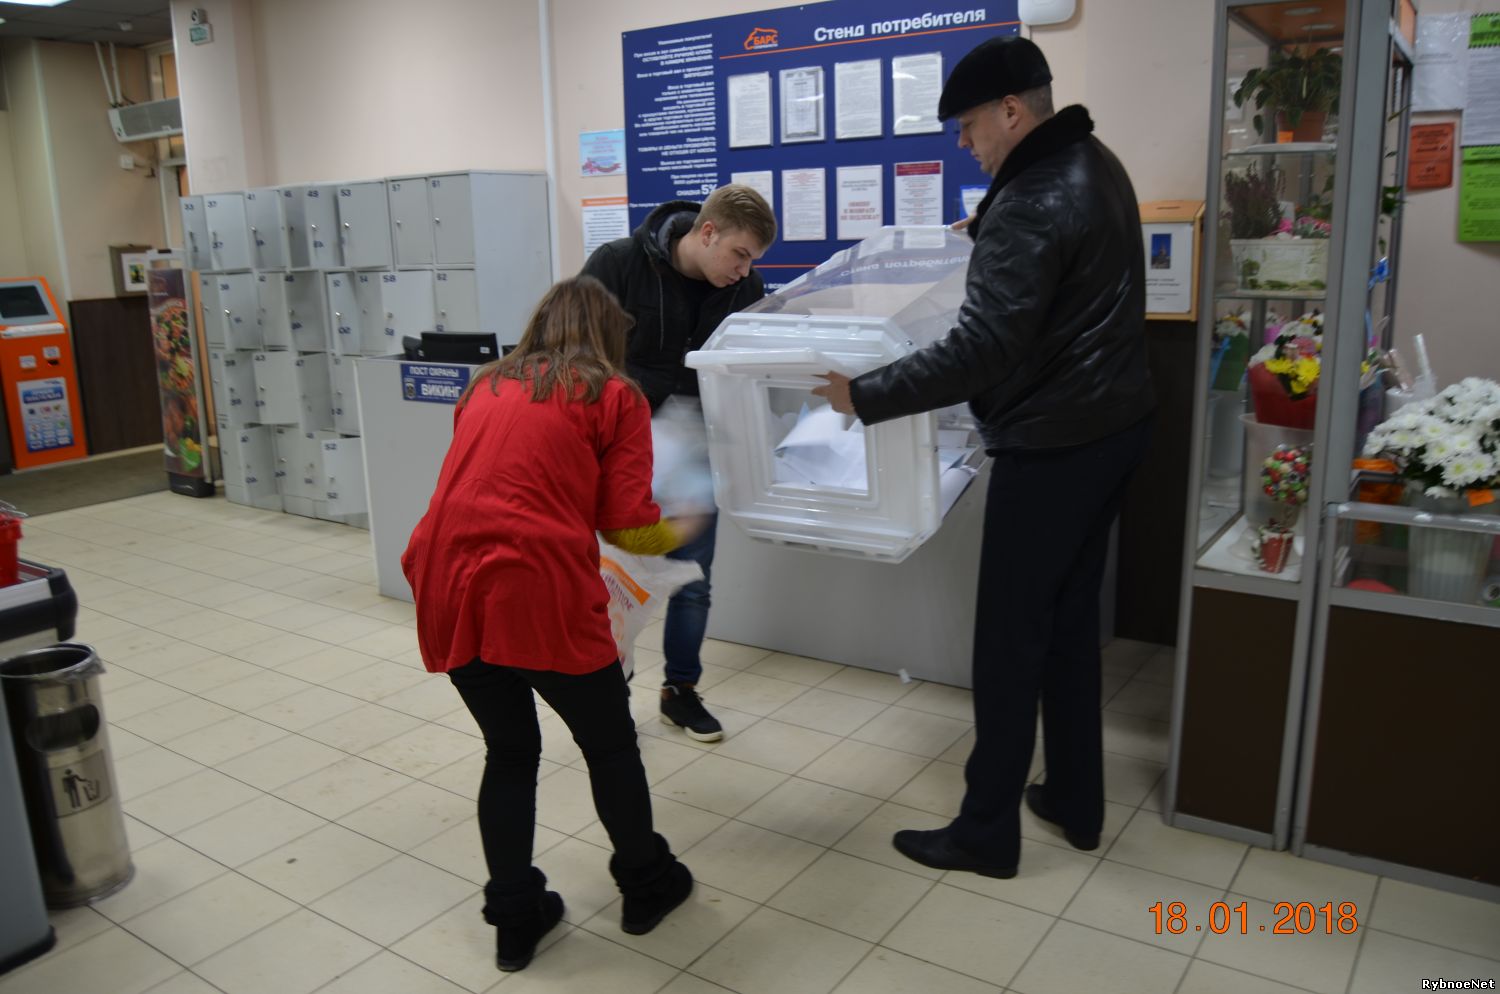 В Рыбном состоялась выемка анкет участников голосования по выбору благоустройств в городе